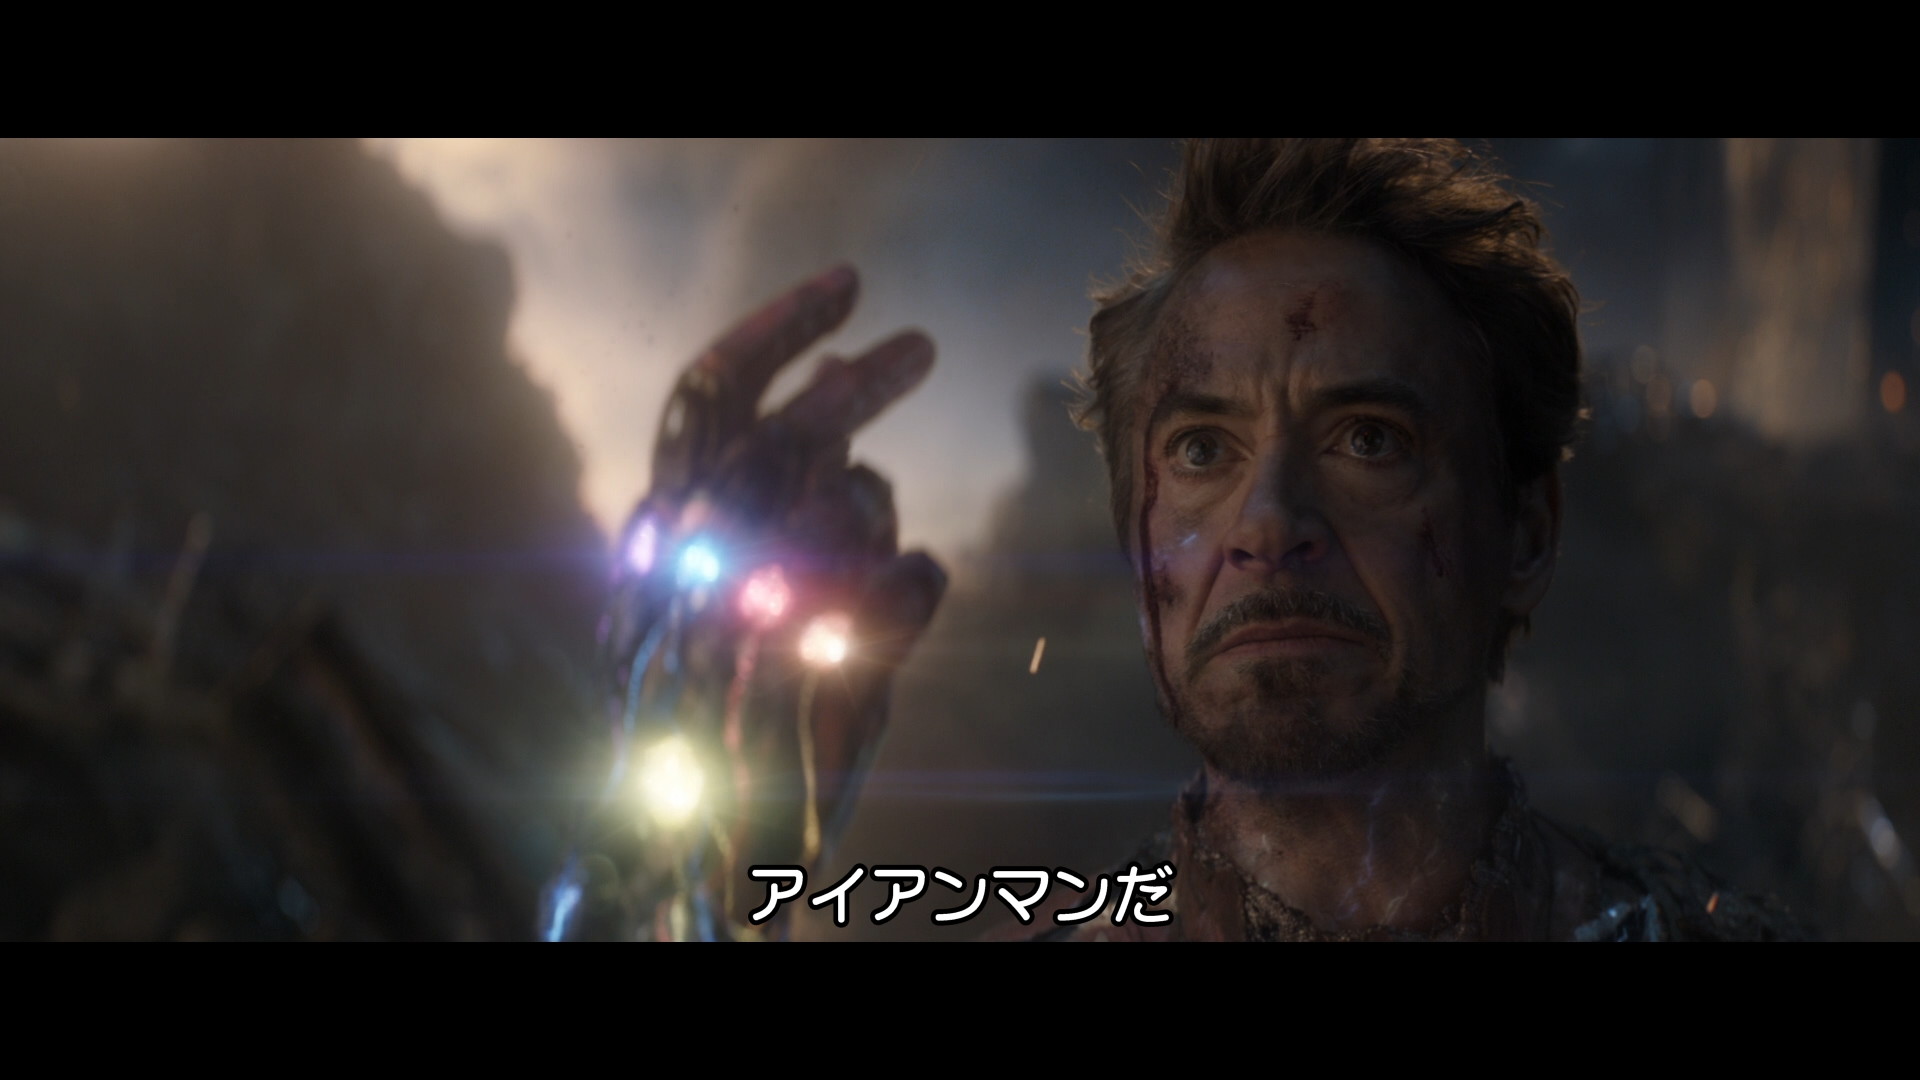 I M Iron Man アイム アイアンマンって言わないのはなぜ 英語の疑問 アメコミ映画の英語解説まとめ